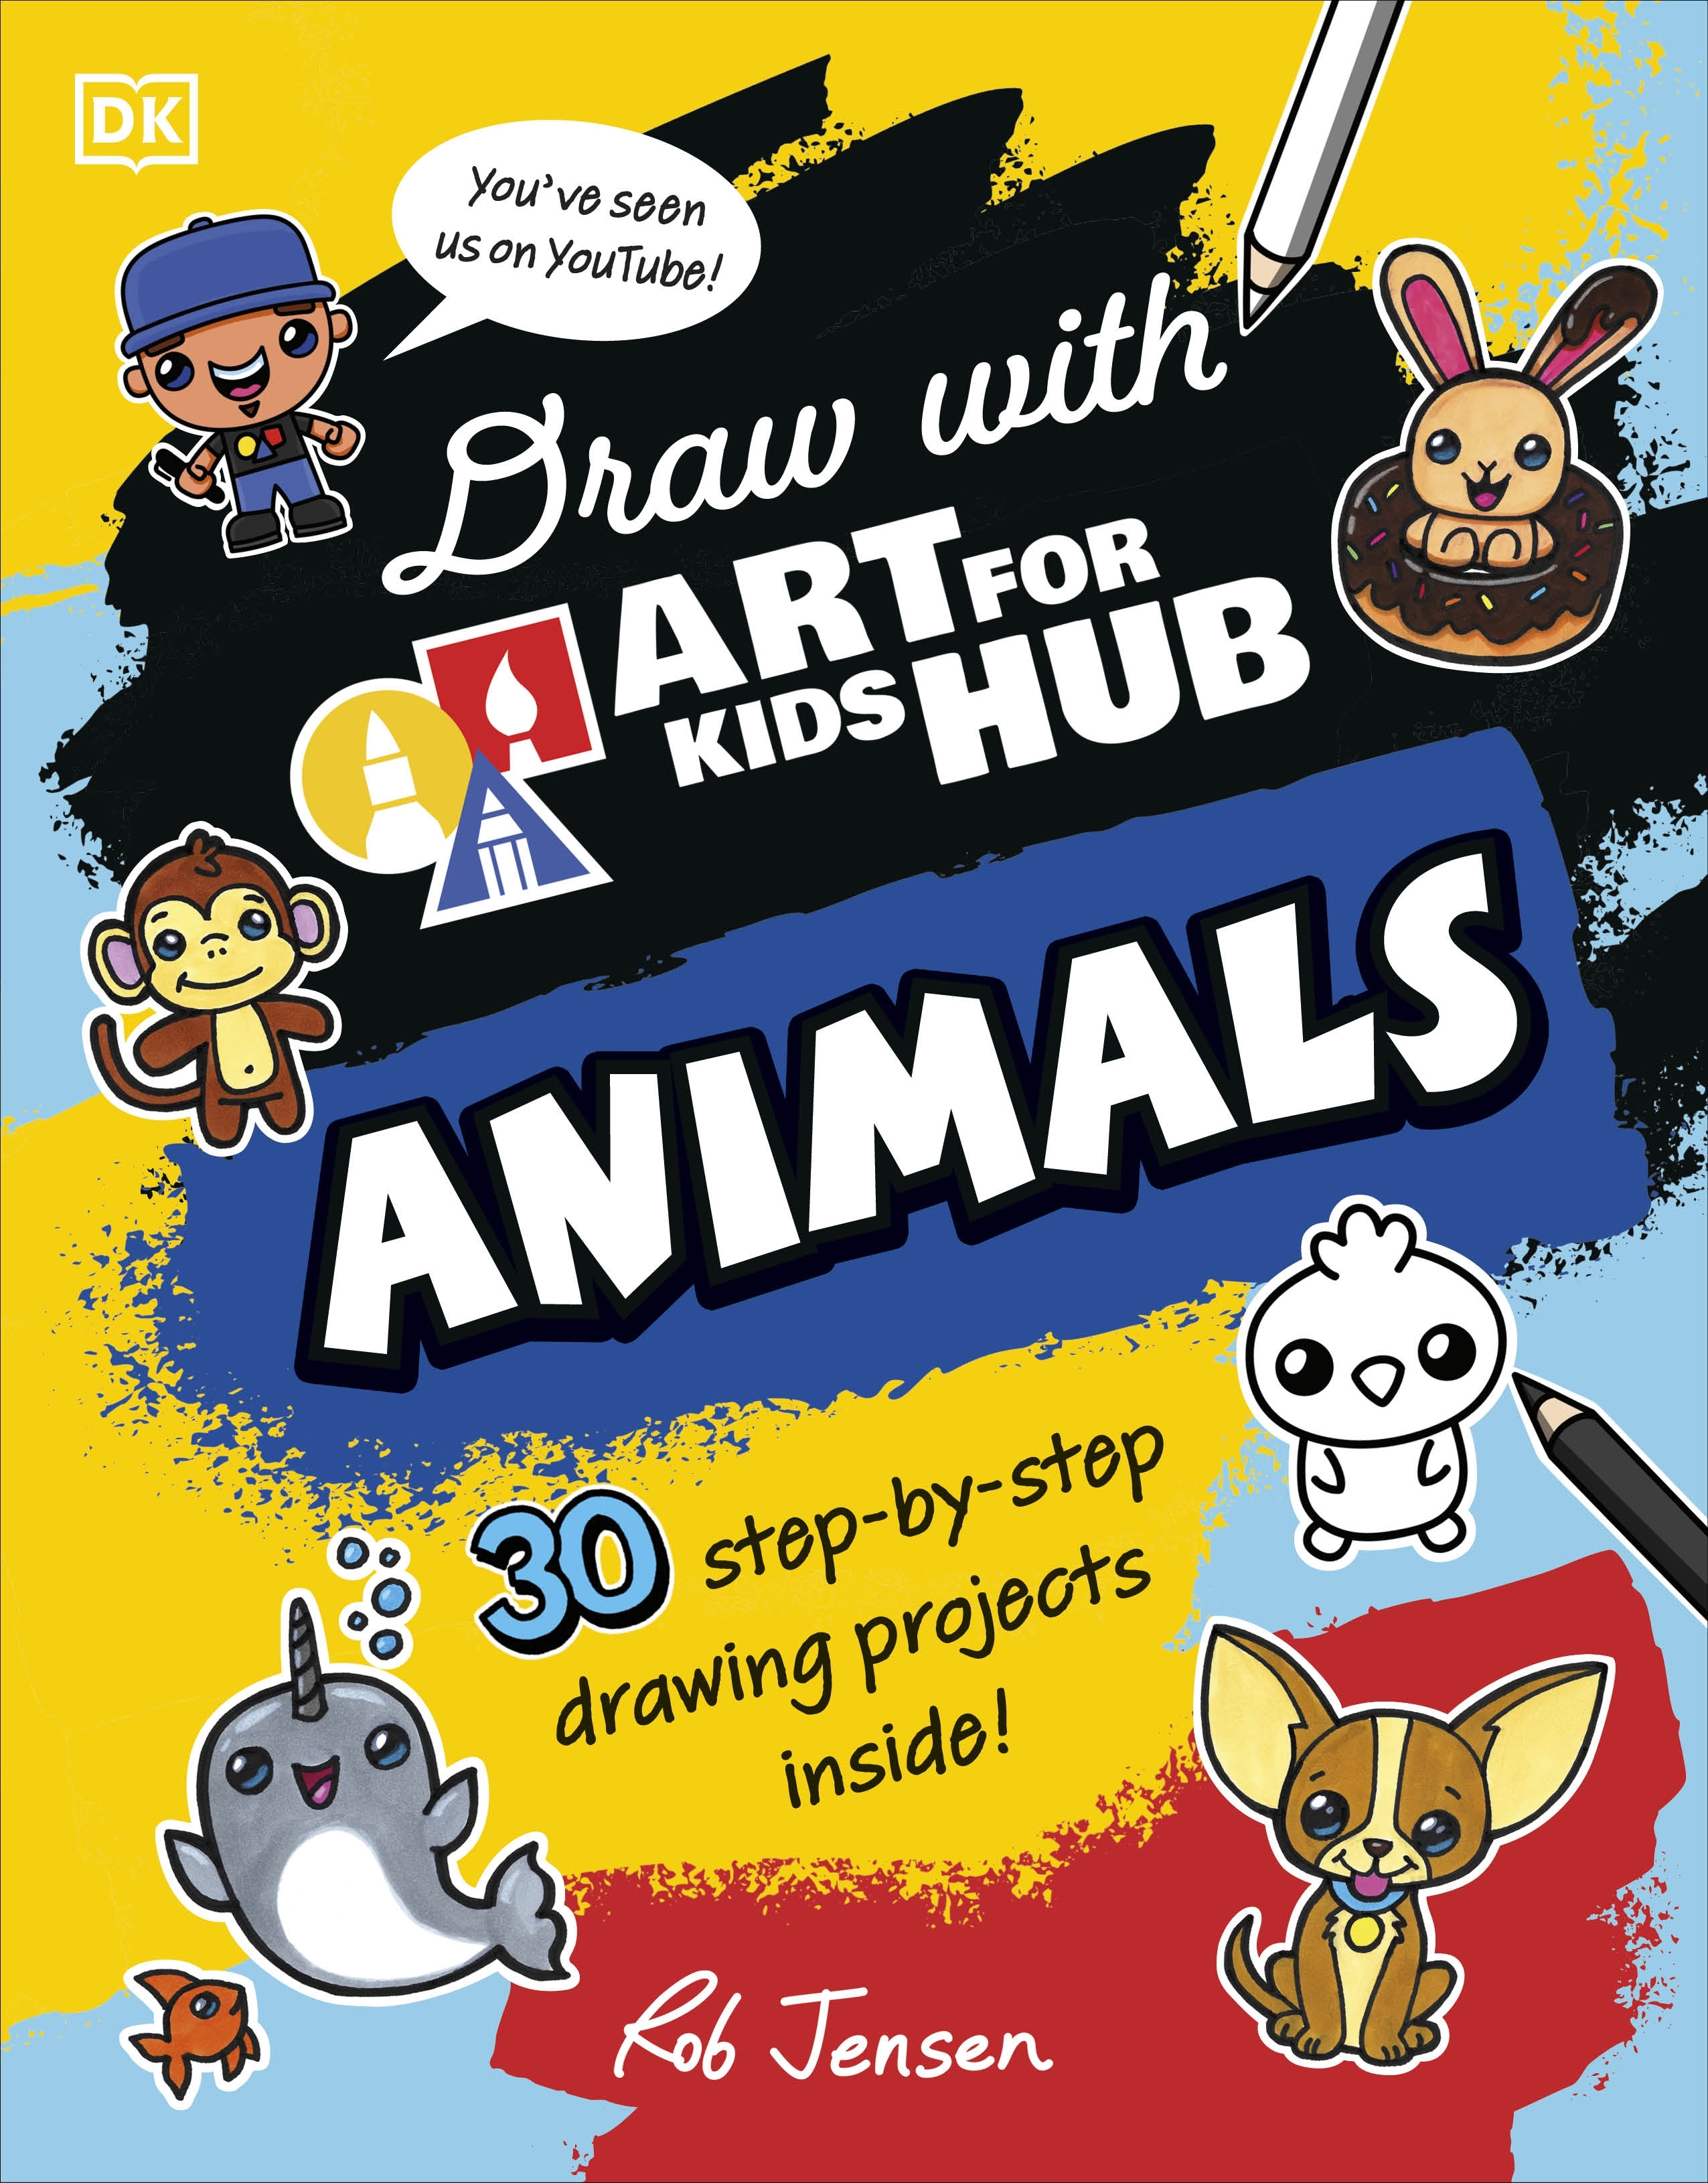 Art for Kids Hub 